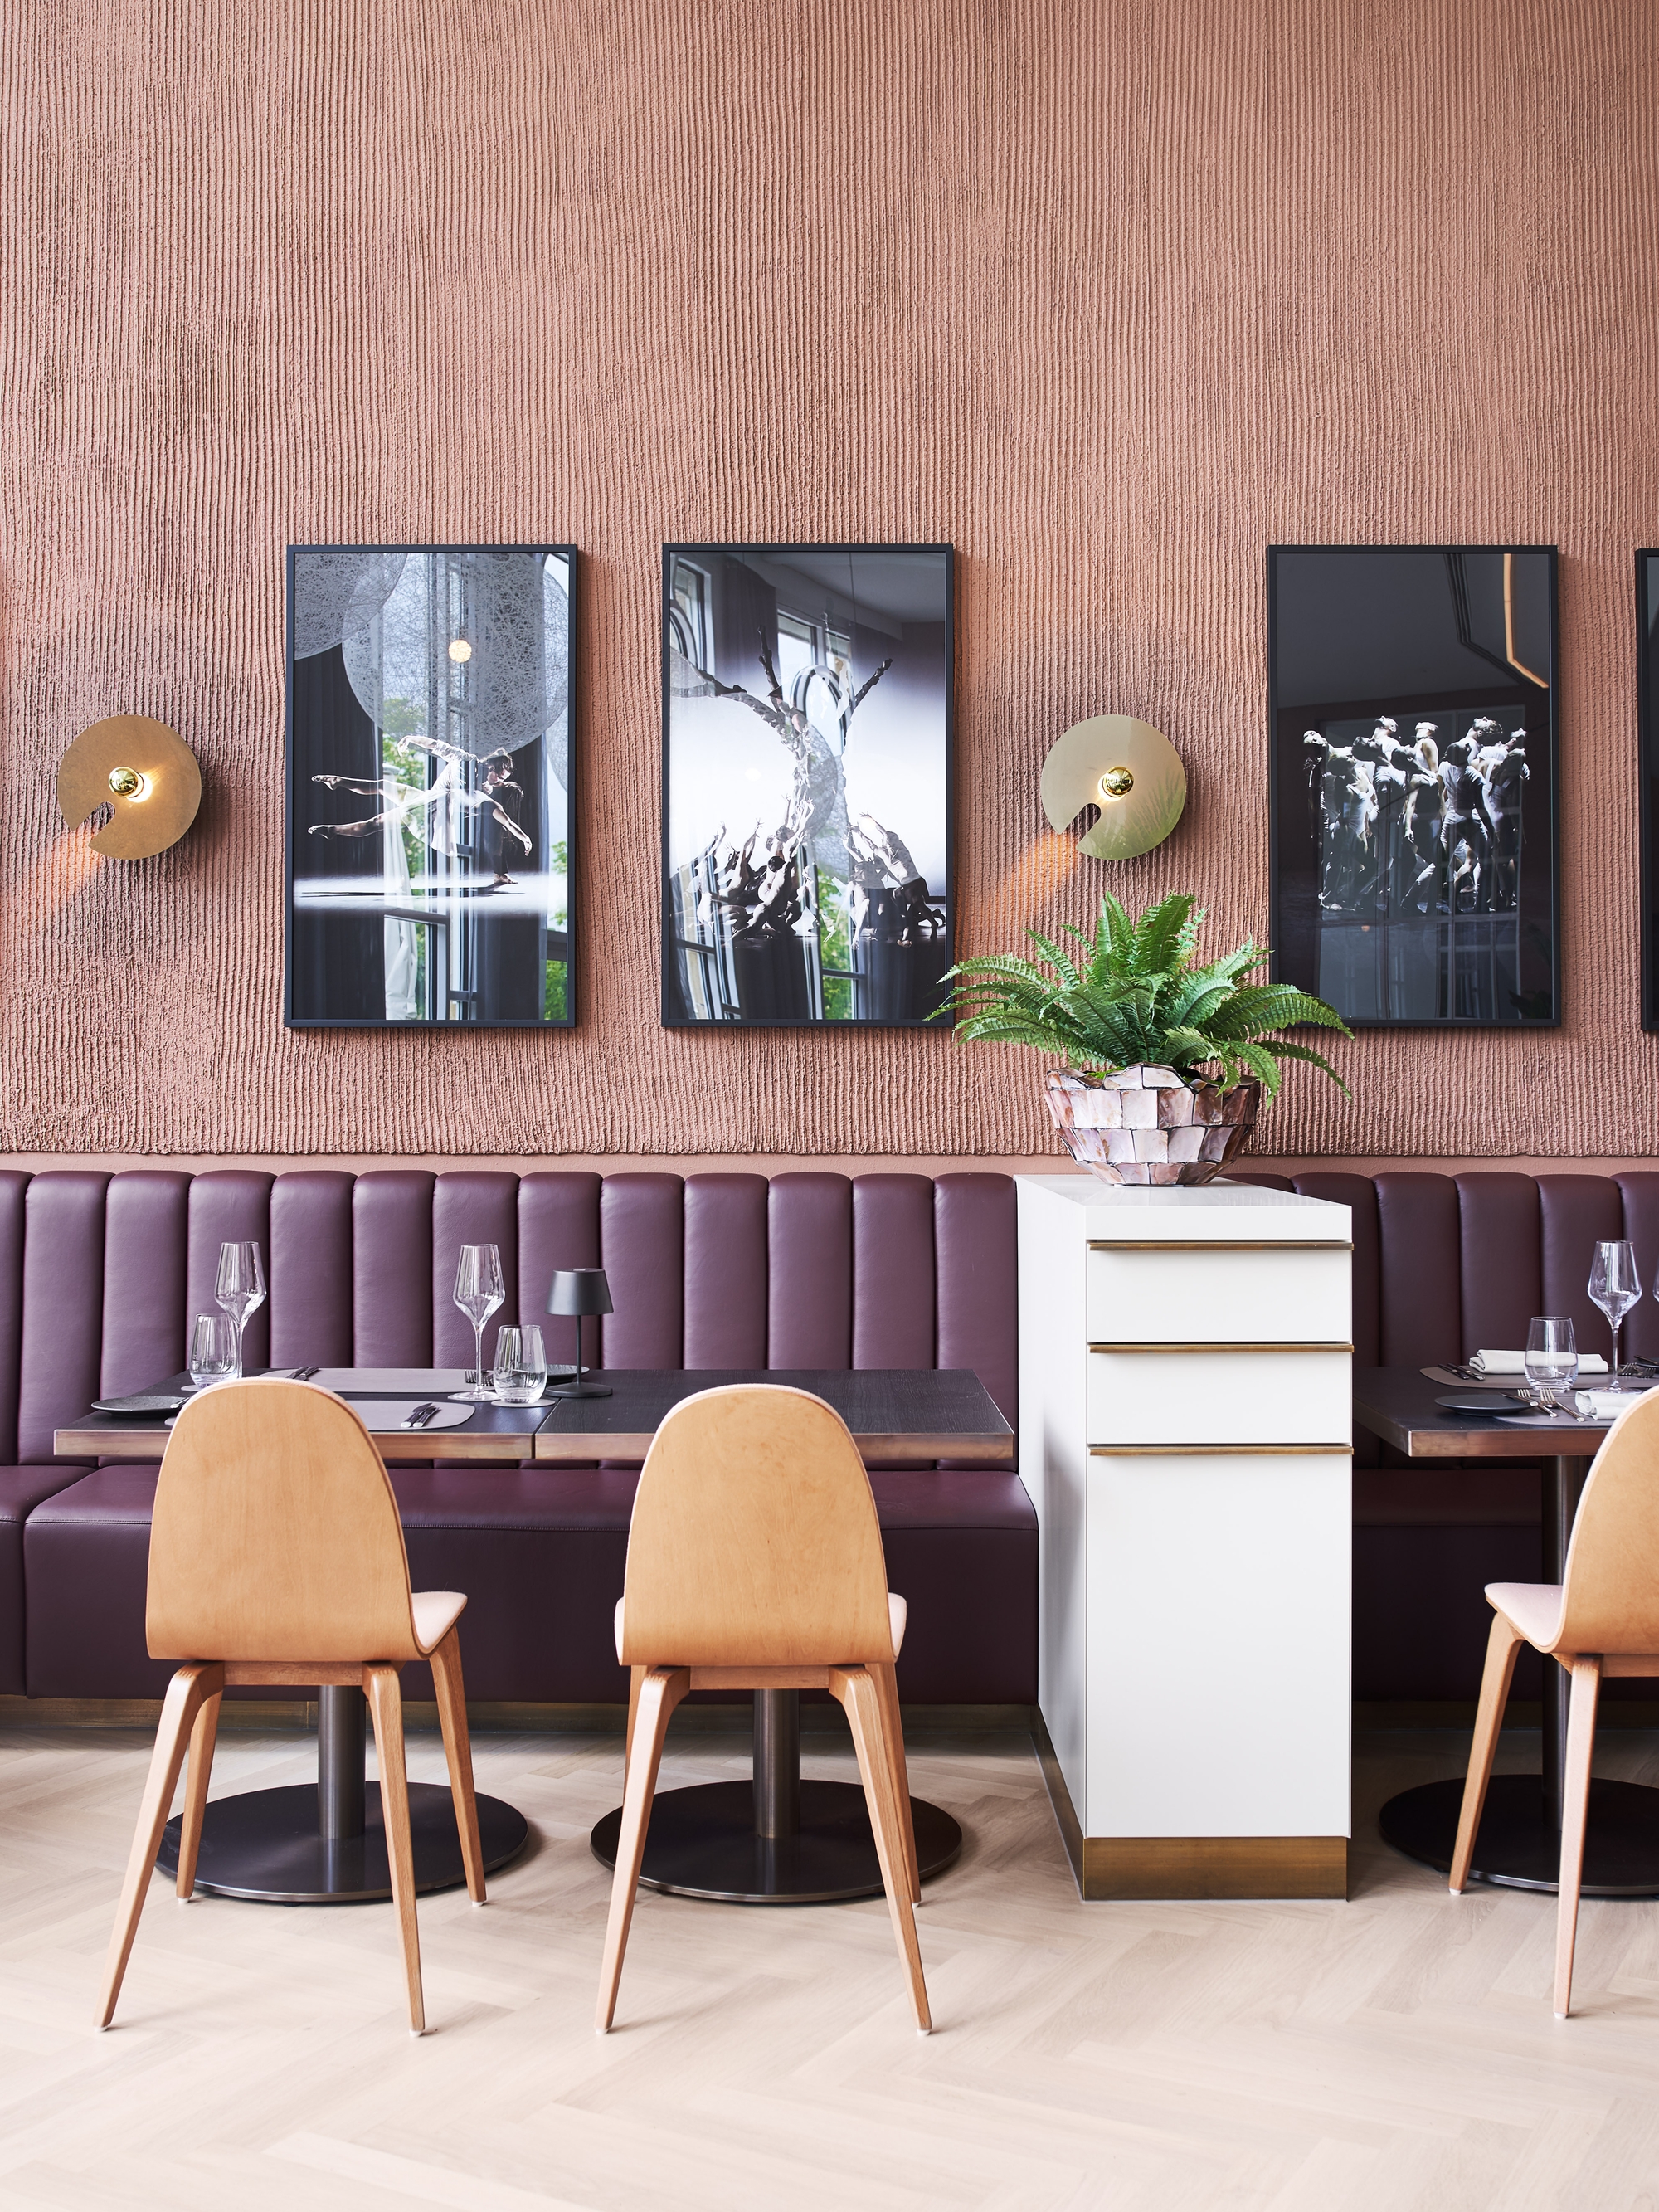 图片[4]|餐厅Danza|ART-Arrakis | 建筑室内设计的创新与灵感